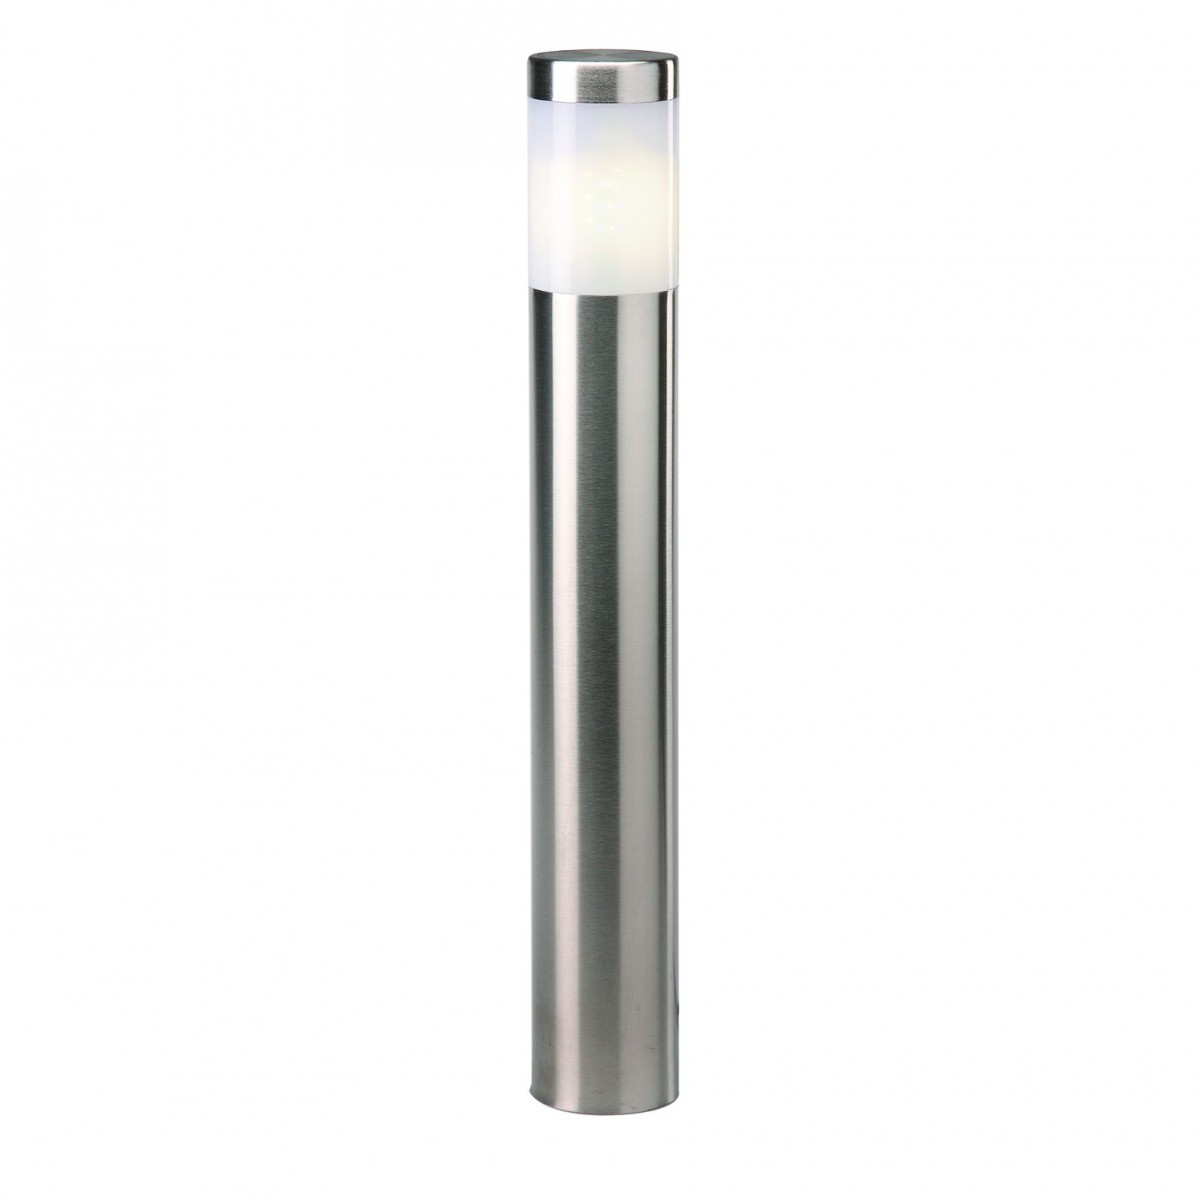 GARDENLIGHT Lampa zewnętrzna stojąca LED ALBUS Gardenlight, stal nierdzewna, srebrny 4024601 4024601